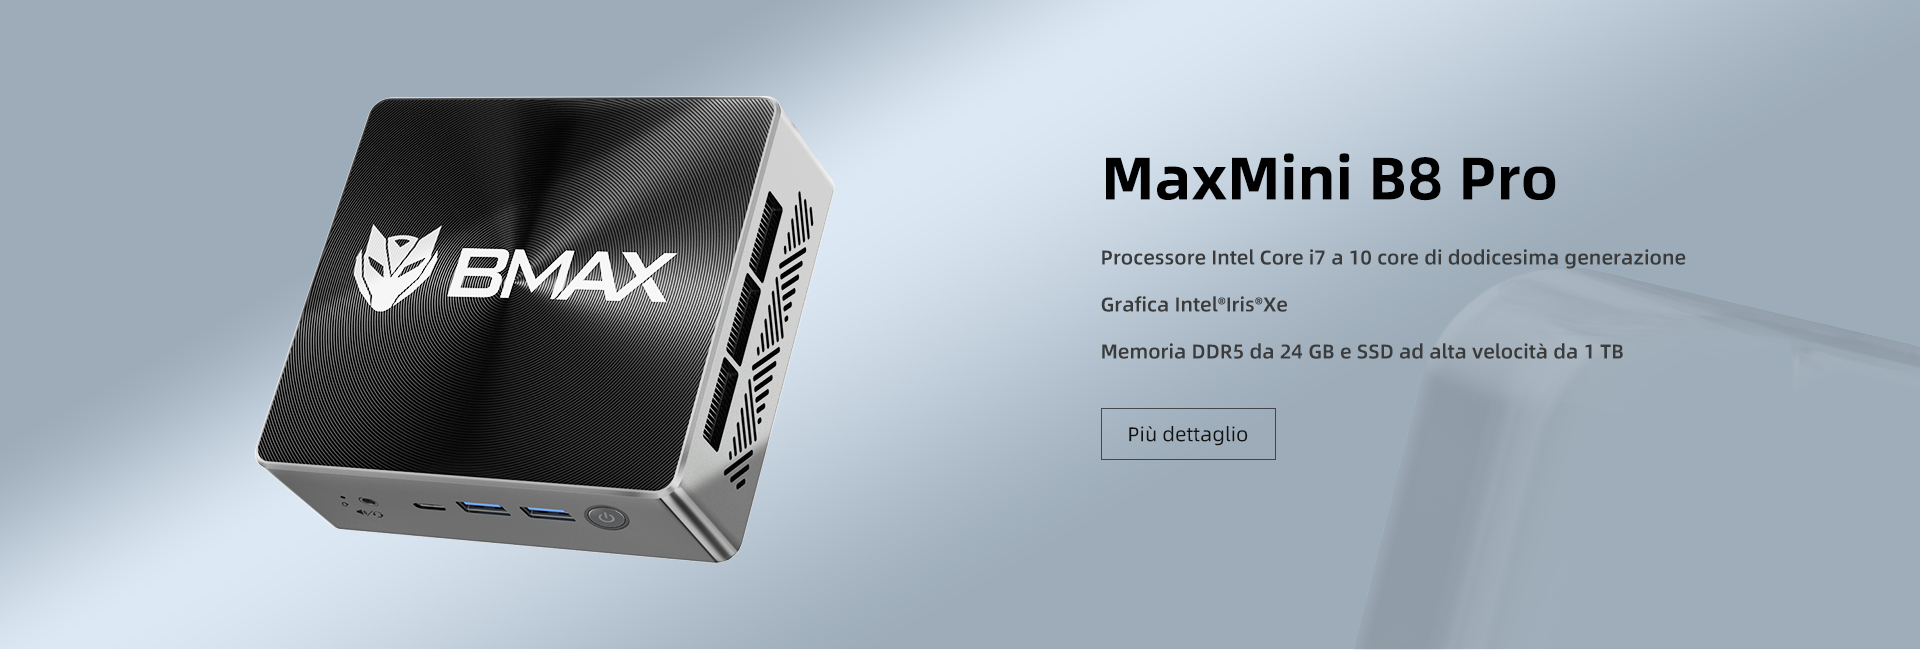 MaxMini B8 Pro